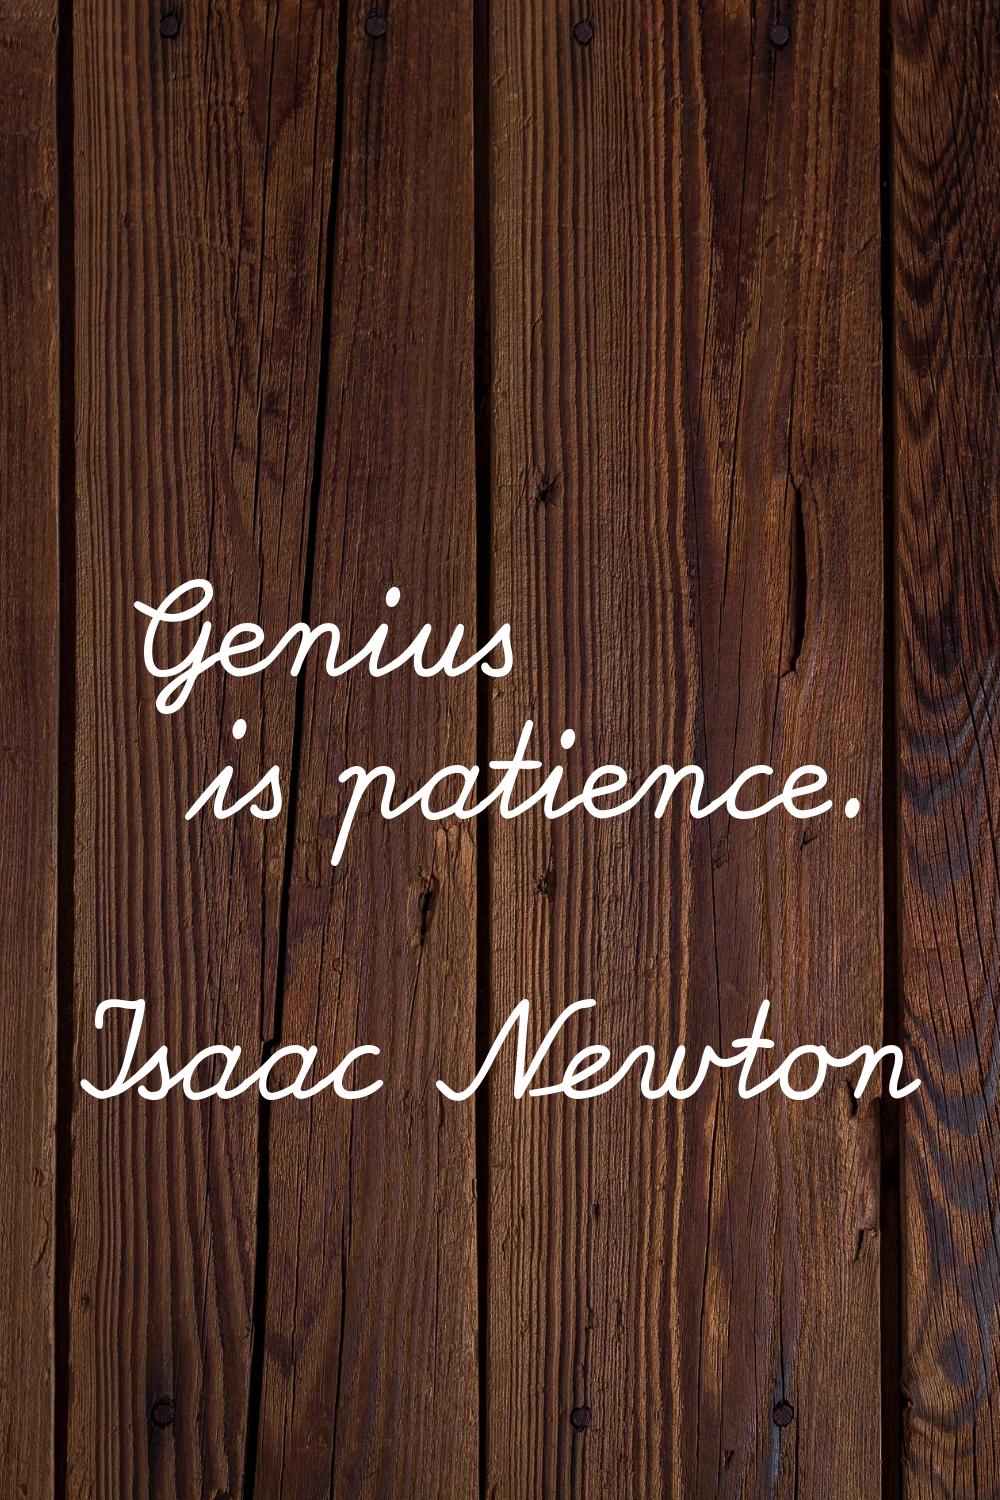 Genius is patience.